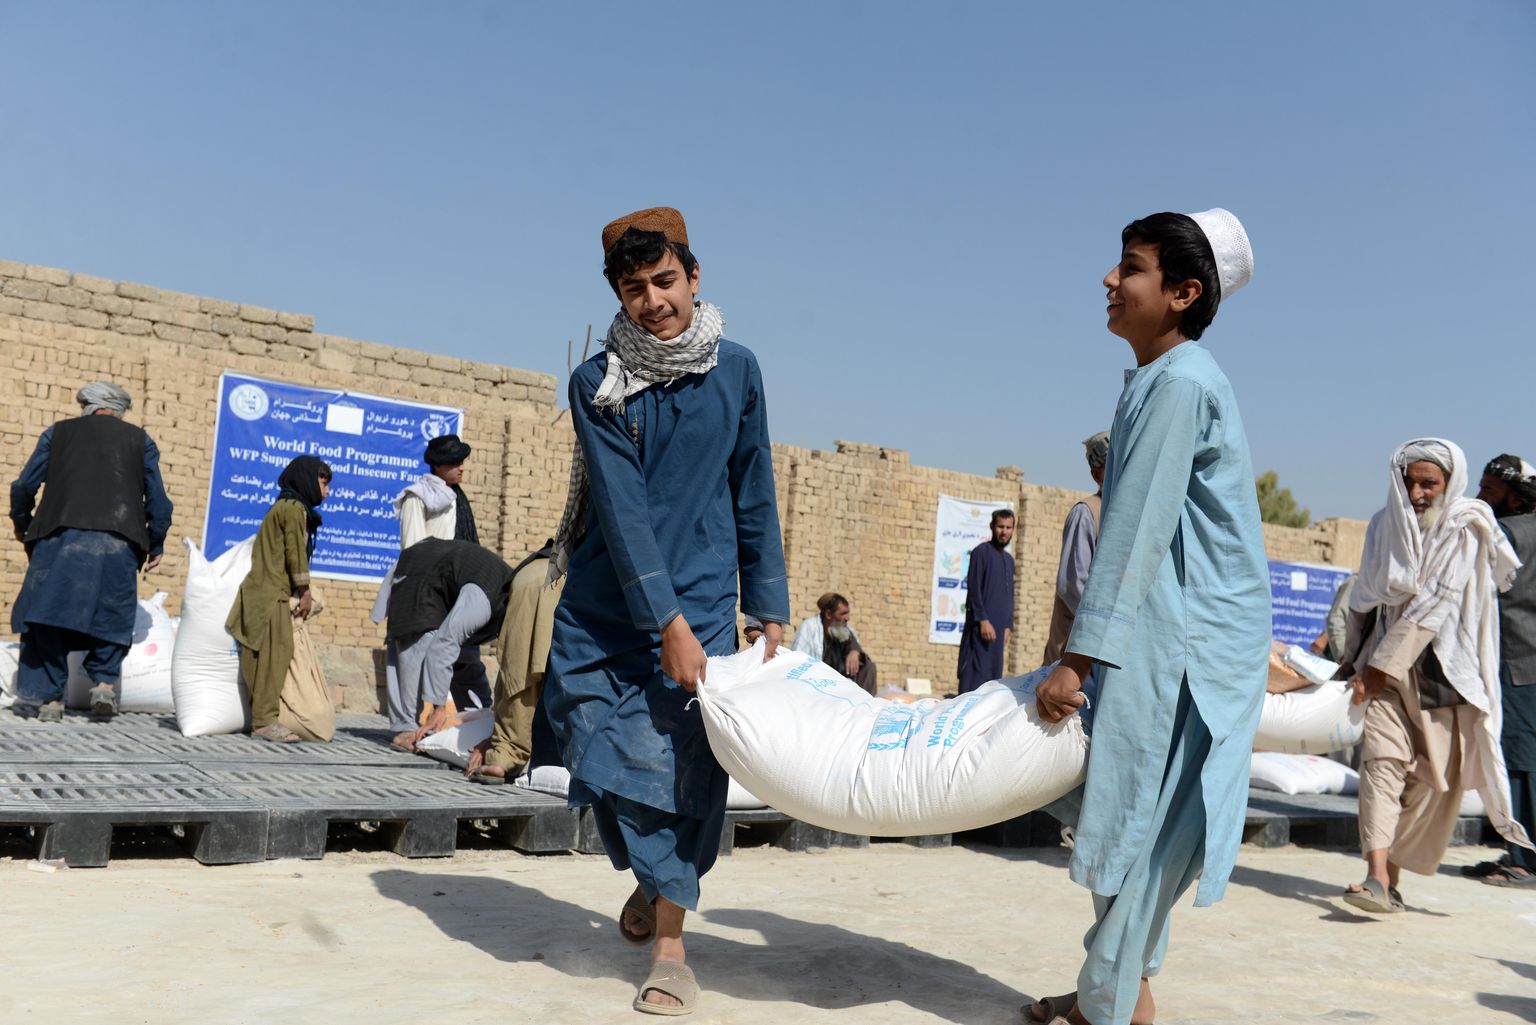 Maailma Toiduprogrammi abisaadetise jagamine Afganistanis Kandaharis.